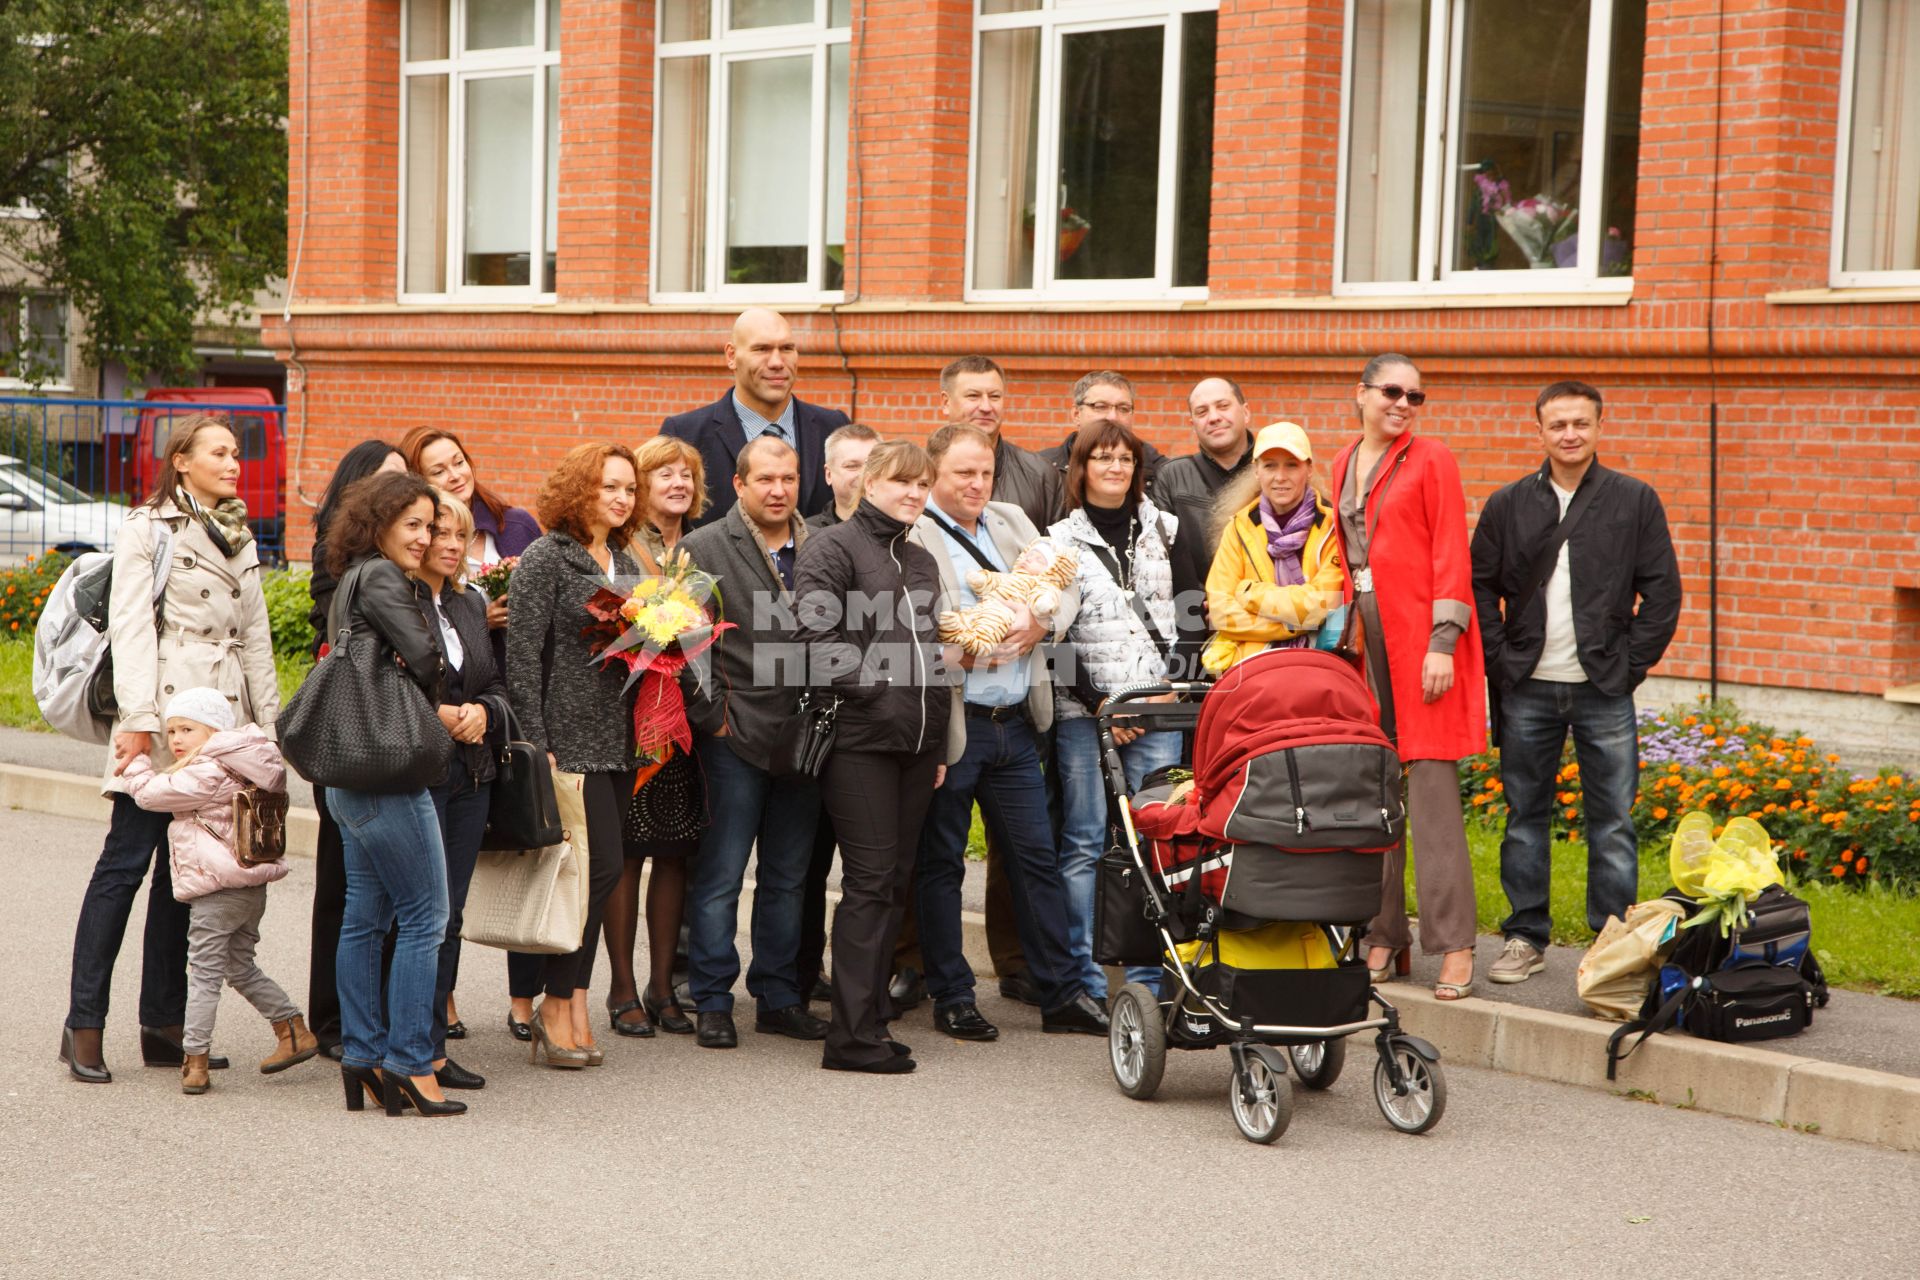 Боксер и политик Николай Валуев участвует в совместном фото родителей учеников первого класса.